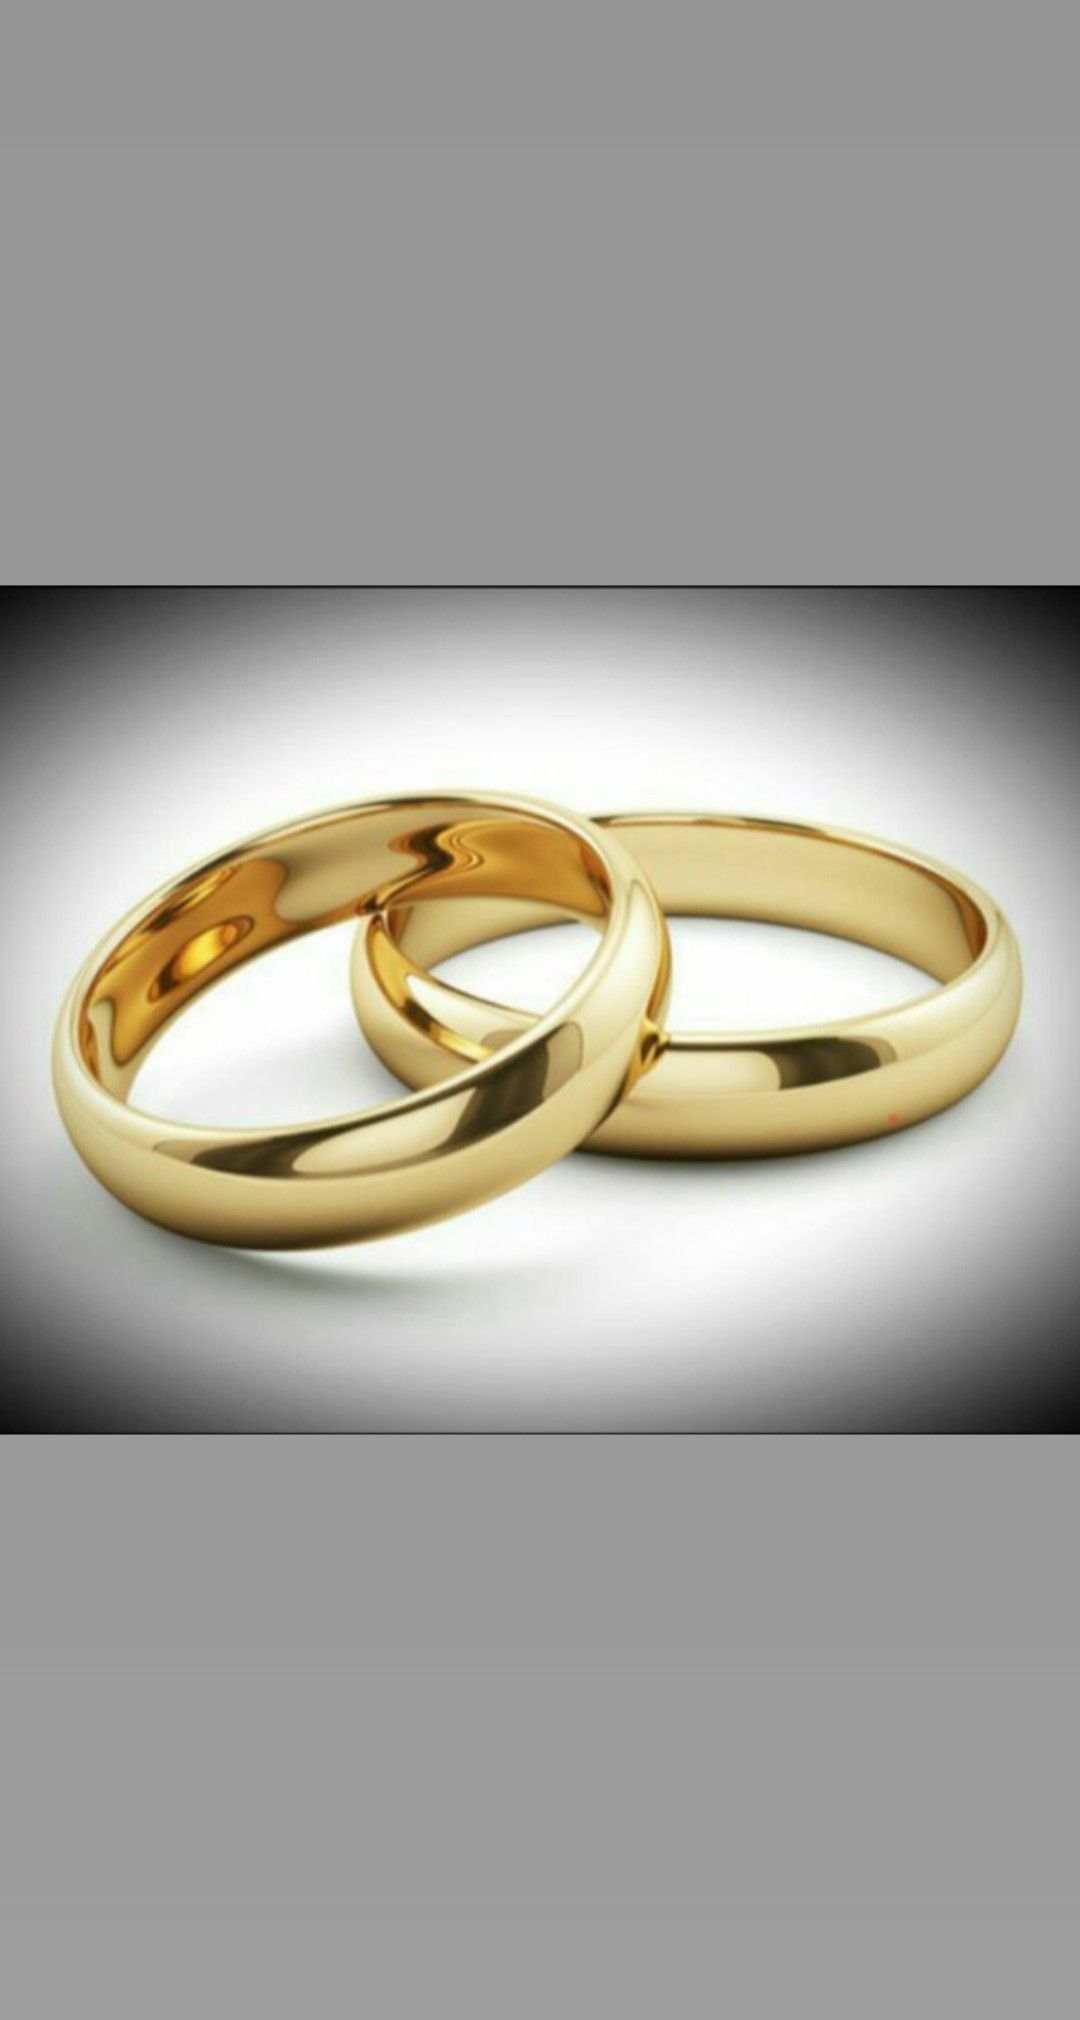 Stainless steel wedding rings on sale